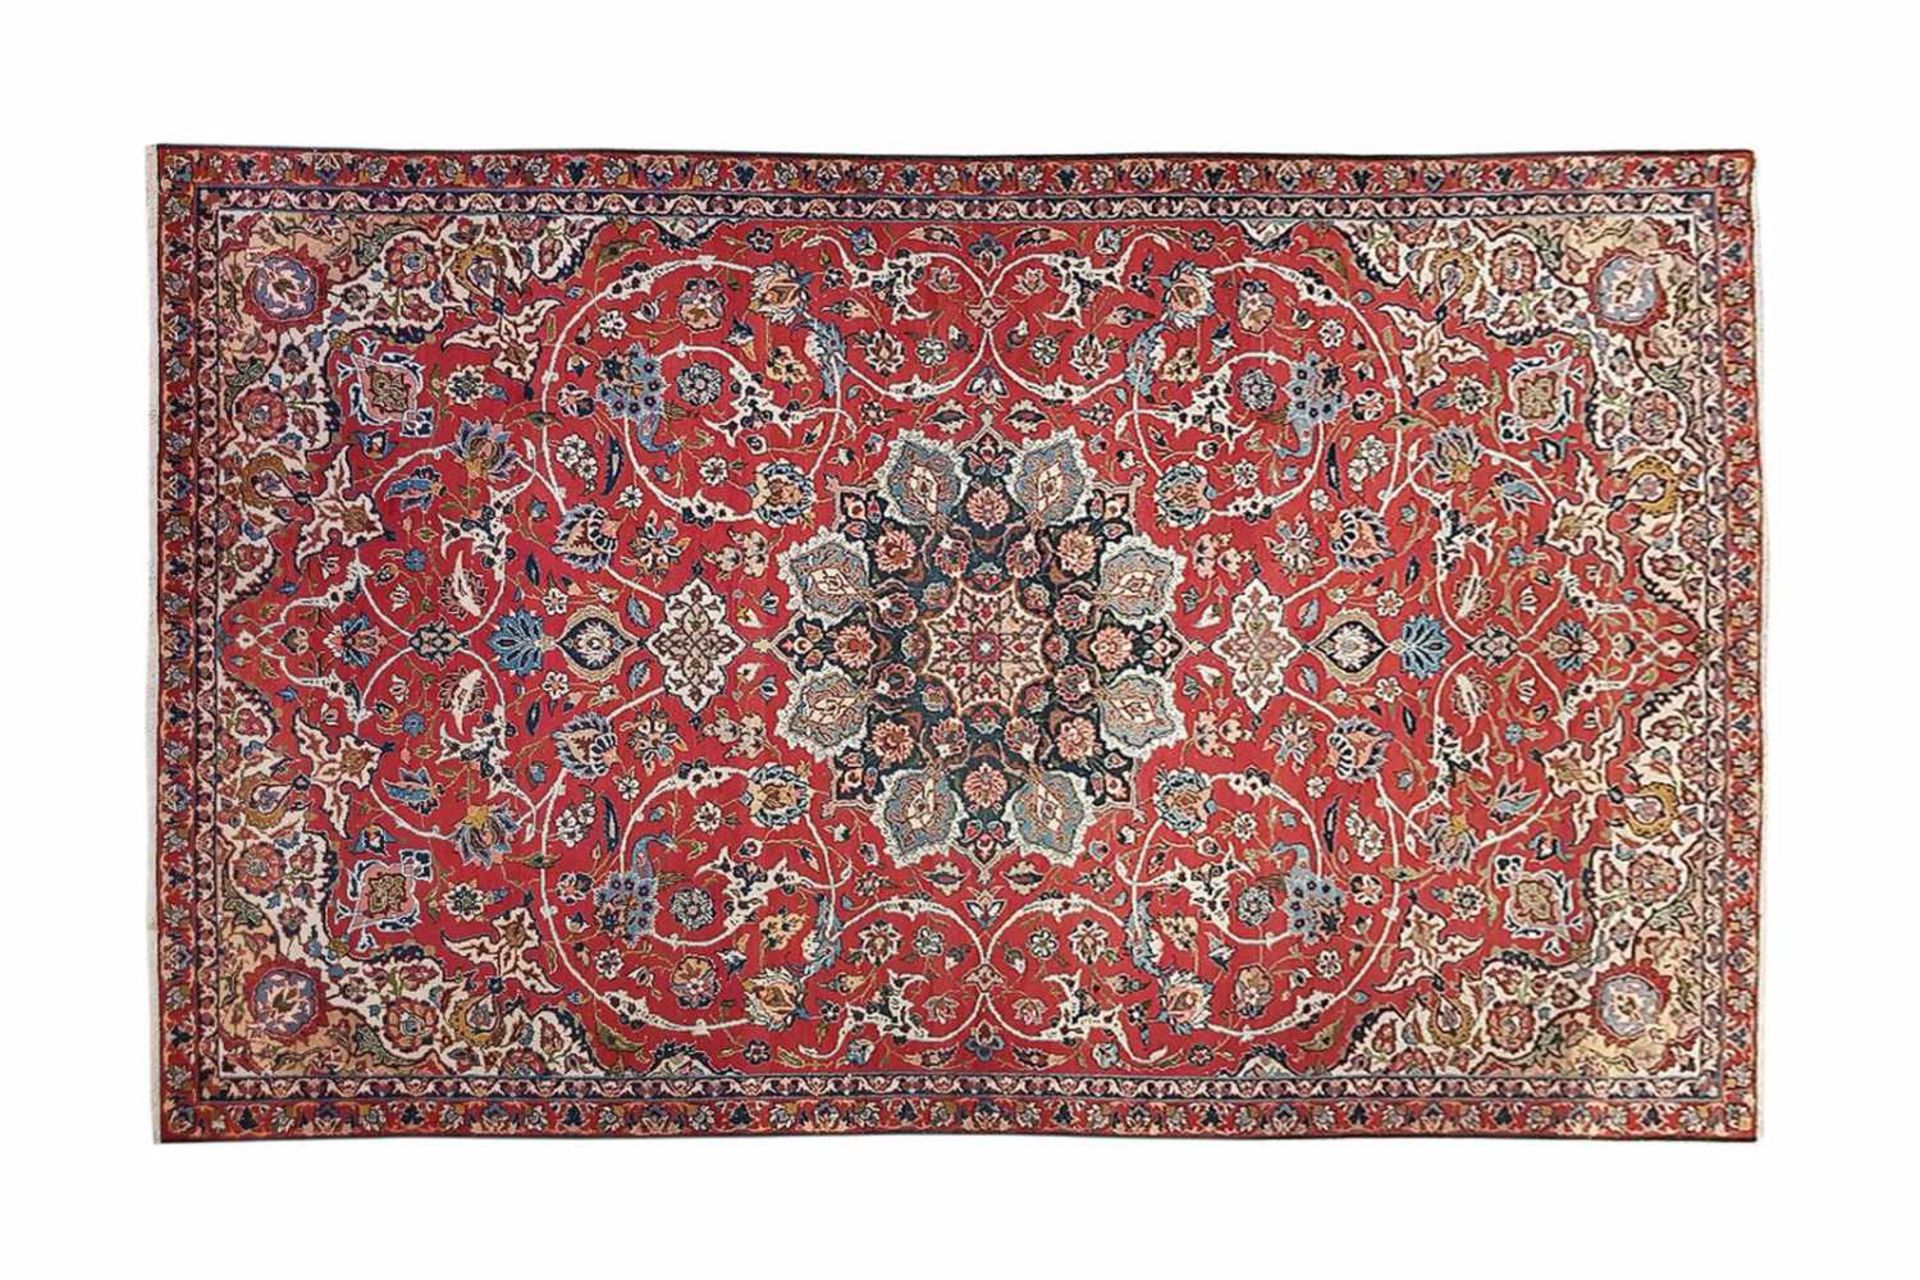 Isfahan Woll-Teppich, 1920-1930Isfahan Woll-Teppich, tadelloser Zustand, gute Farben, reine Wolle